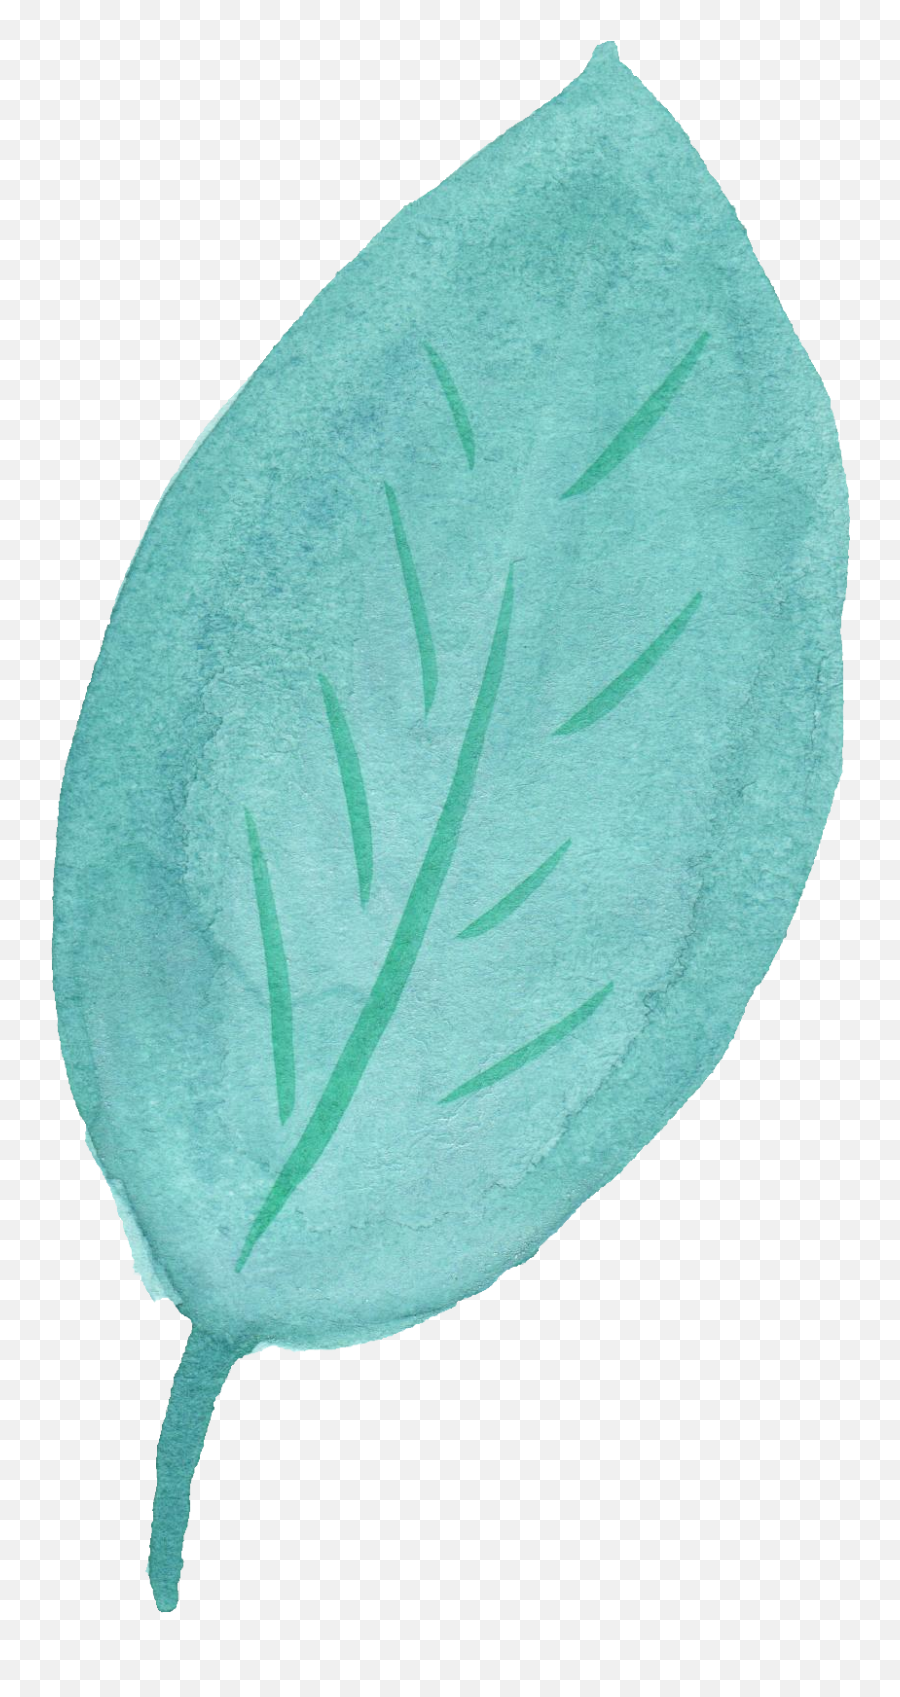 Watercolor Leaf Vol - Blue Leaf Transparent Background Png,Leaf Transparent Background